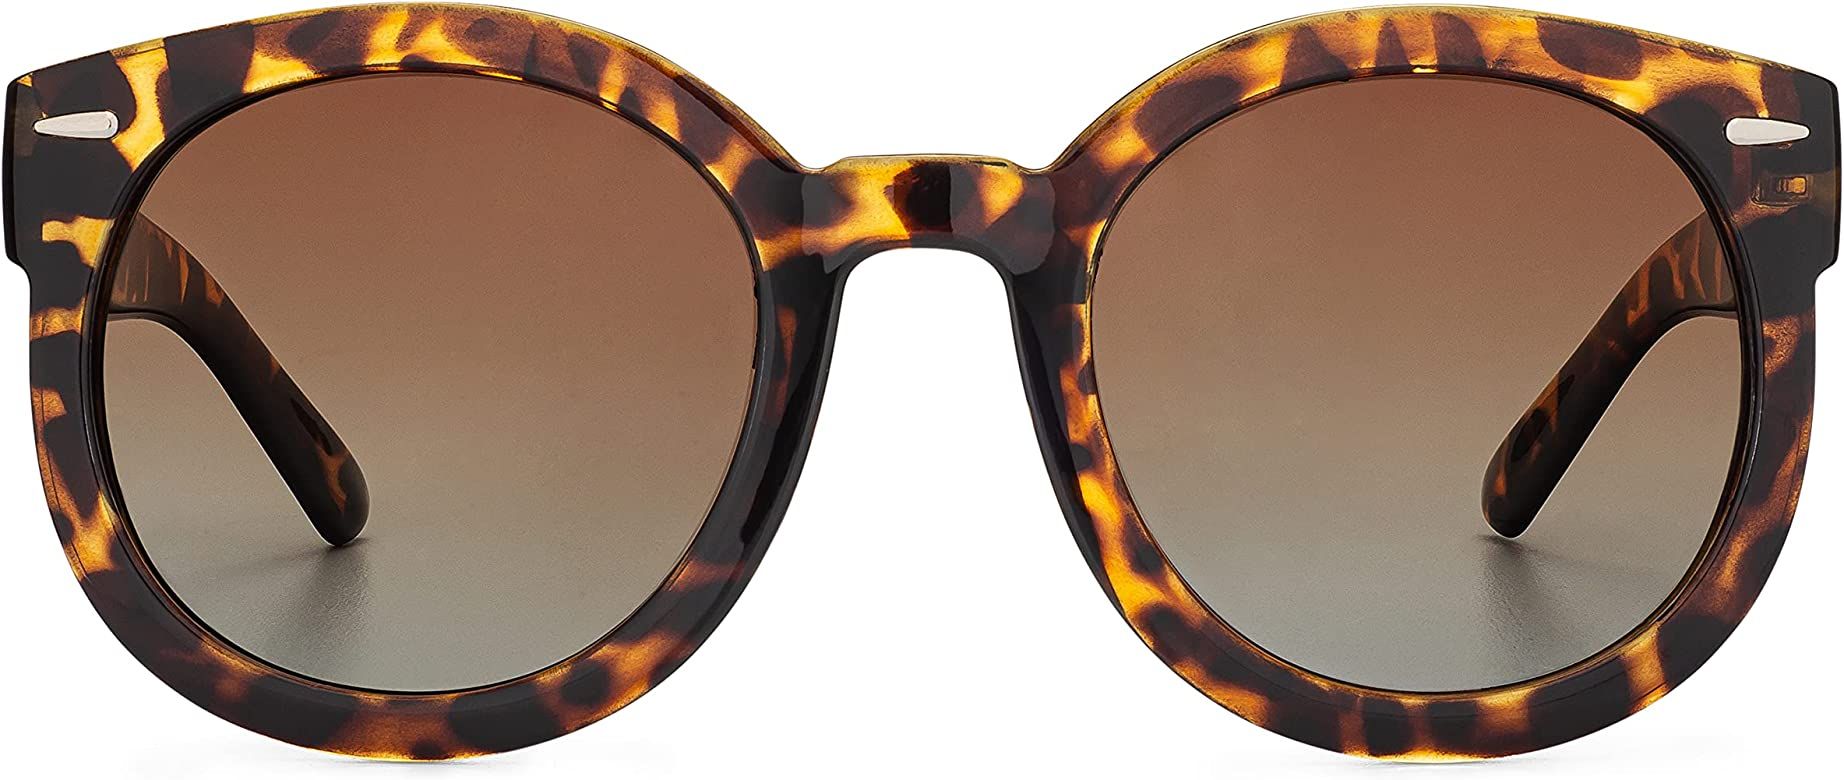 grinderPUNCH Oversized Sunglasses For Women Round Circle Oversized Mod Fashion | Amazon (US)